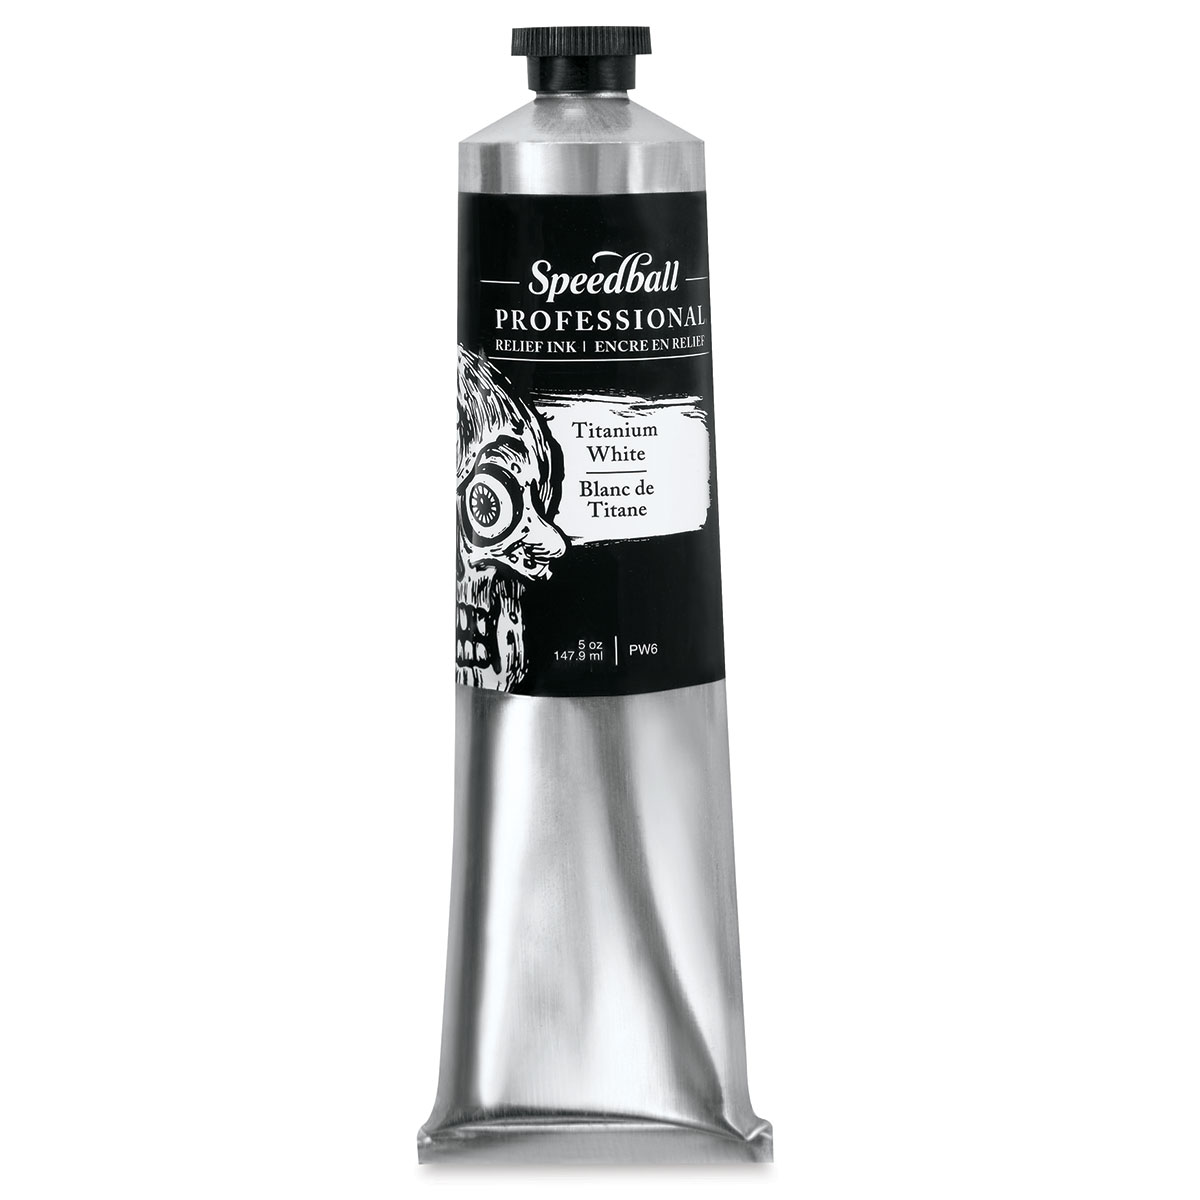 Speedball Professional Relief Ink - Titanium White, 5 oz, Tube